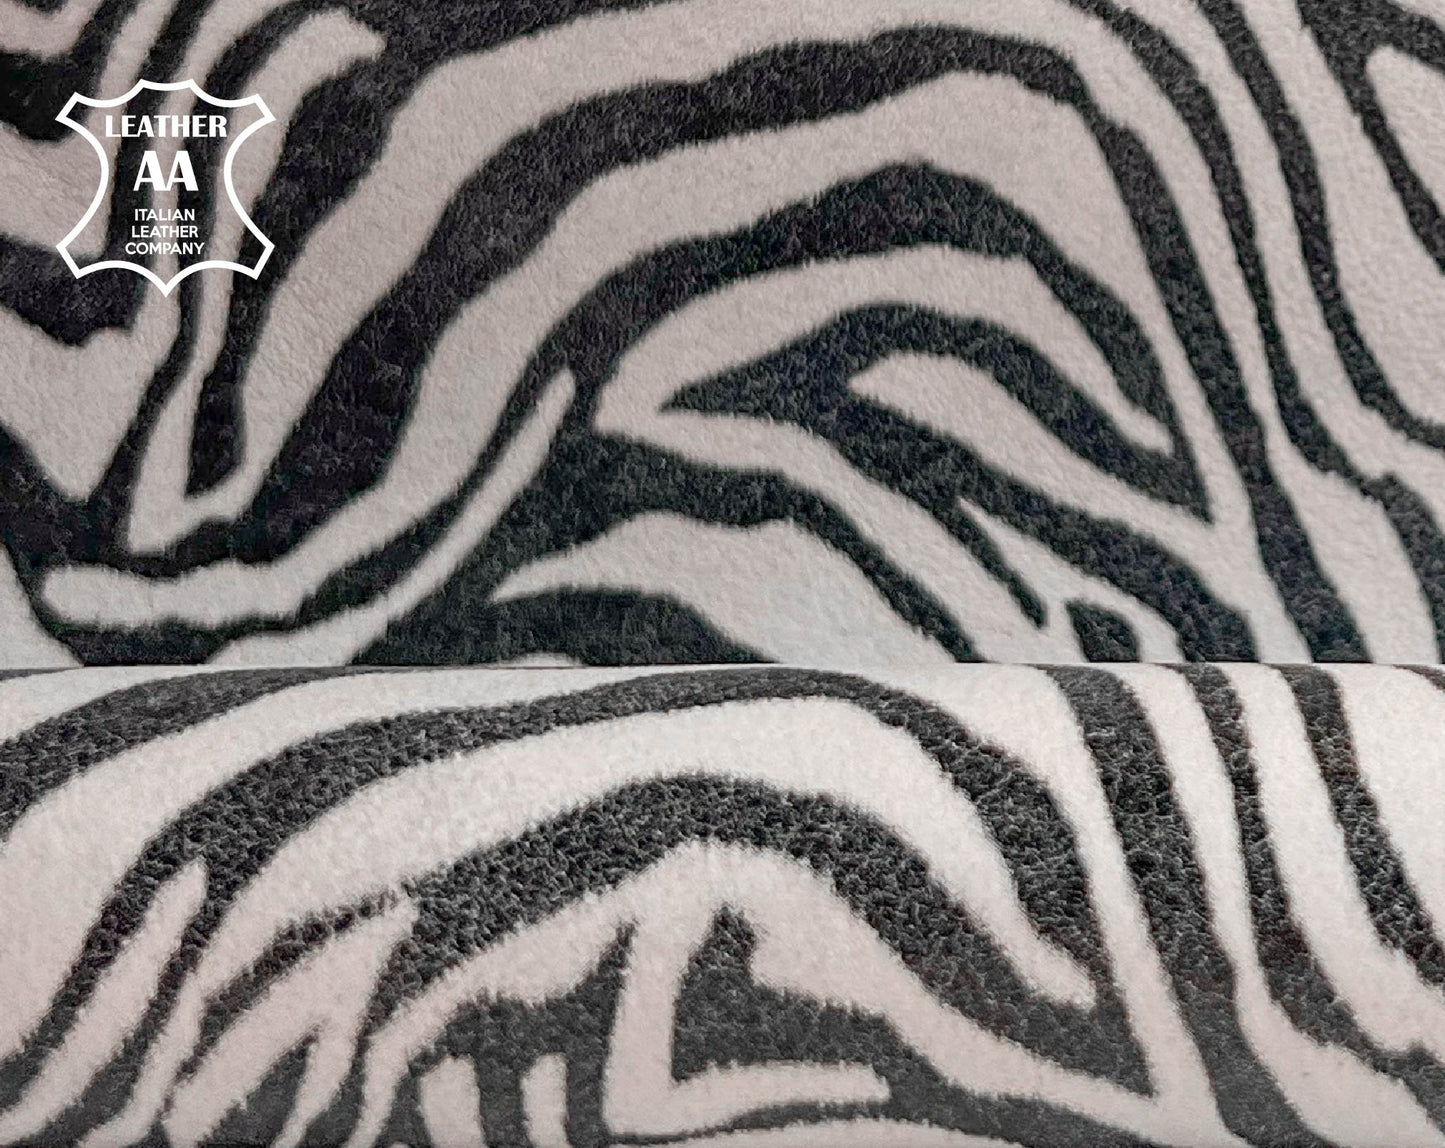 Soft White Zebra Print Lambskin 0.7-1.2mm/1.75-3oz / WHITE ZEBRA 1446